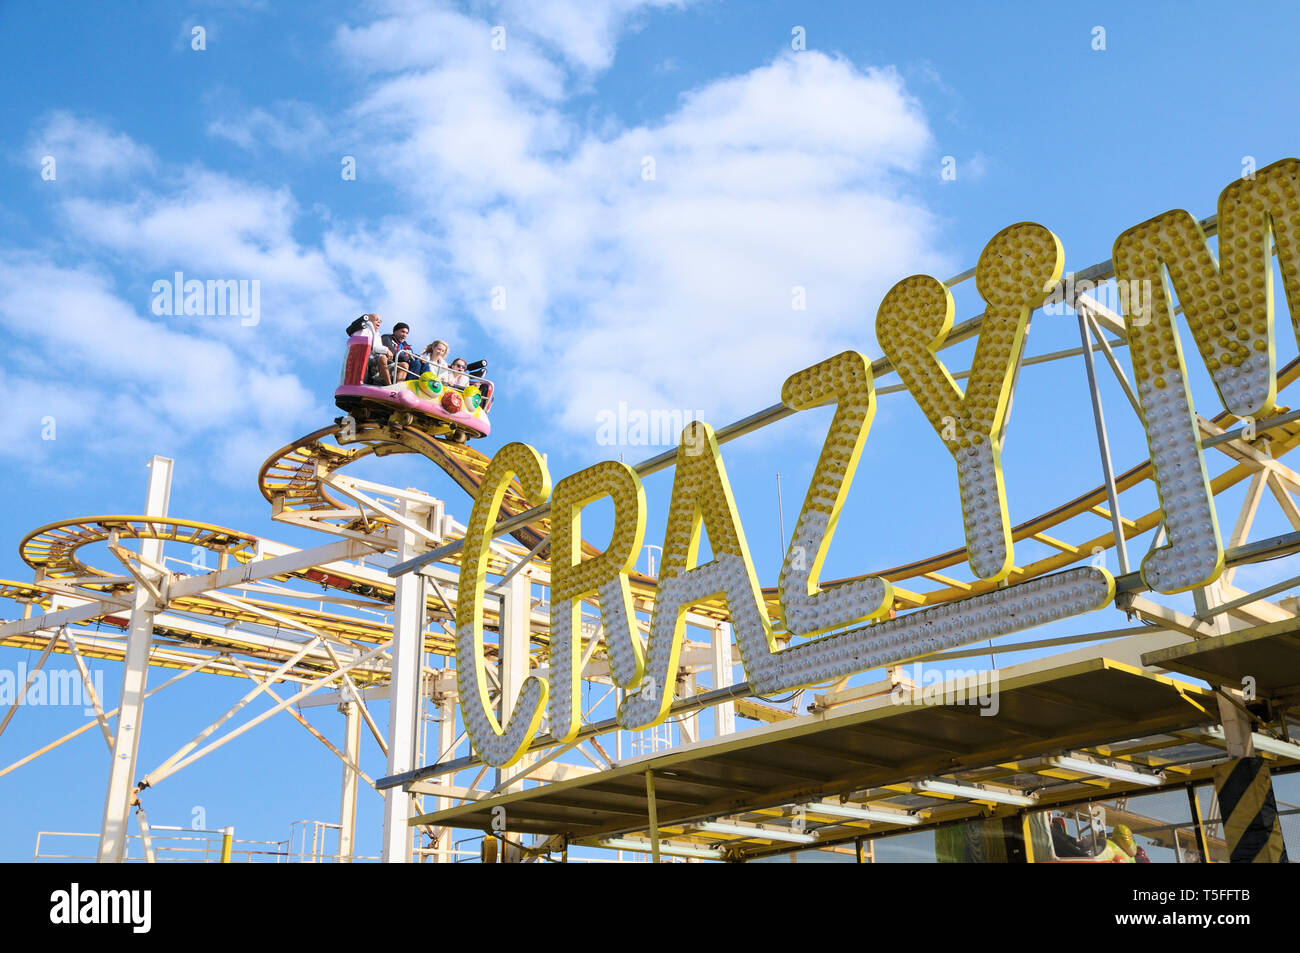 Les personnes bénéficiant de la Crazy Mouse rollercoaster fairground ride at Brighton fête foraine, Brighton Palace Pier, East Sussex, England, UK Banque D'Images